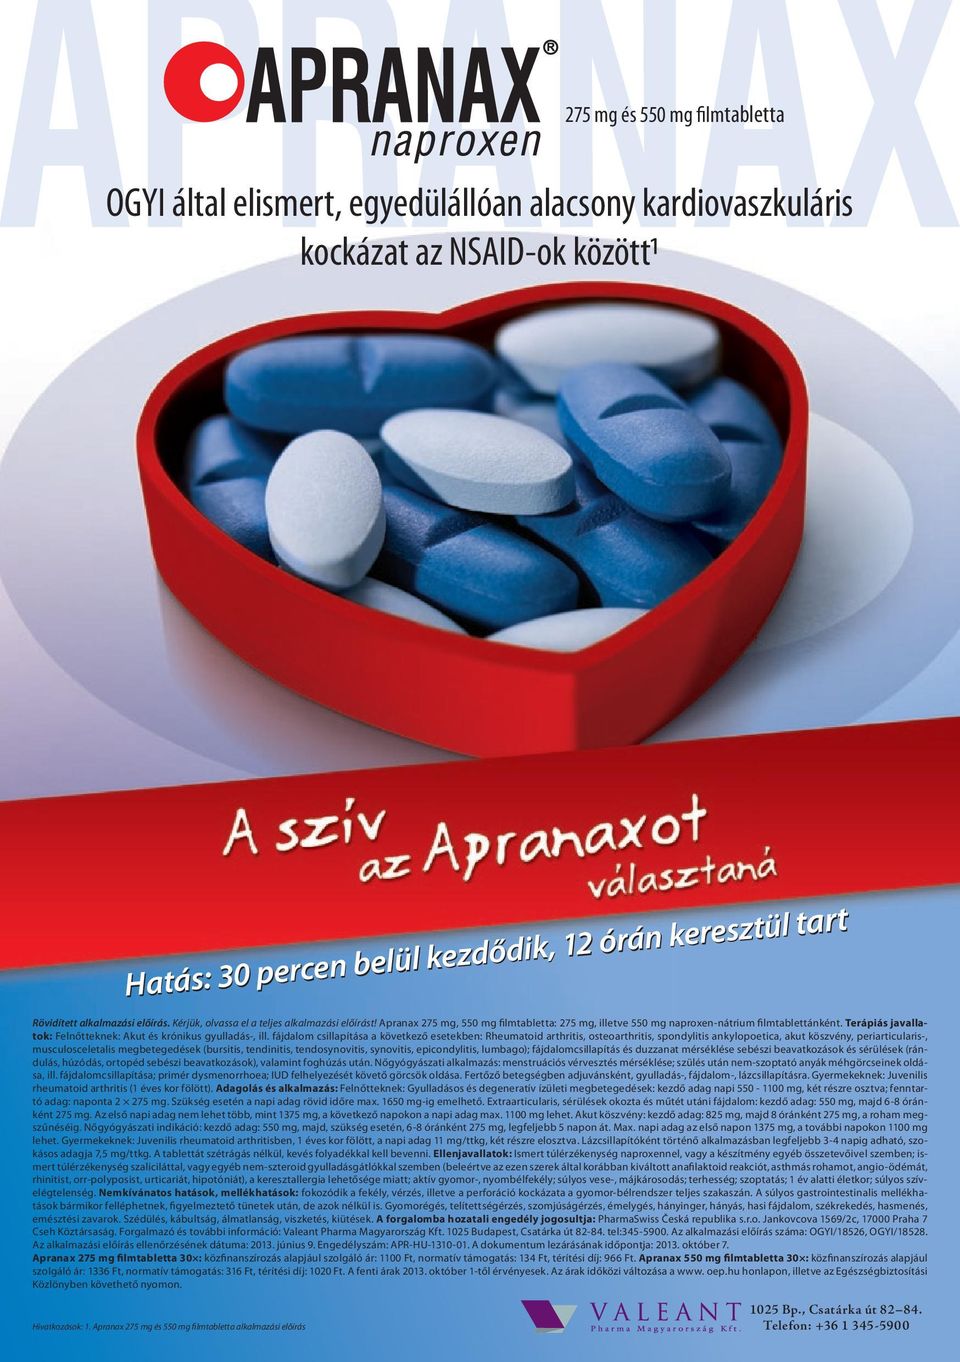 Apranax 275 mg, 550 mg filmtabletta: 275 mg, illetve 550 mg naproxen-nátrium filmtablettánként. Terápiás javallatok: Felnőtteknek: Akut és krónikus gyulladás-, ill.